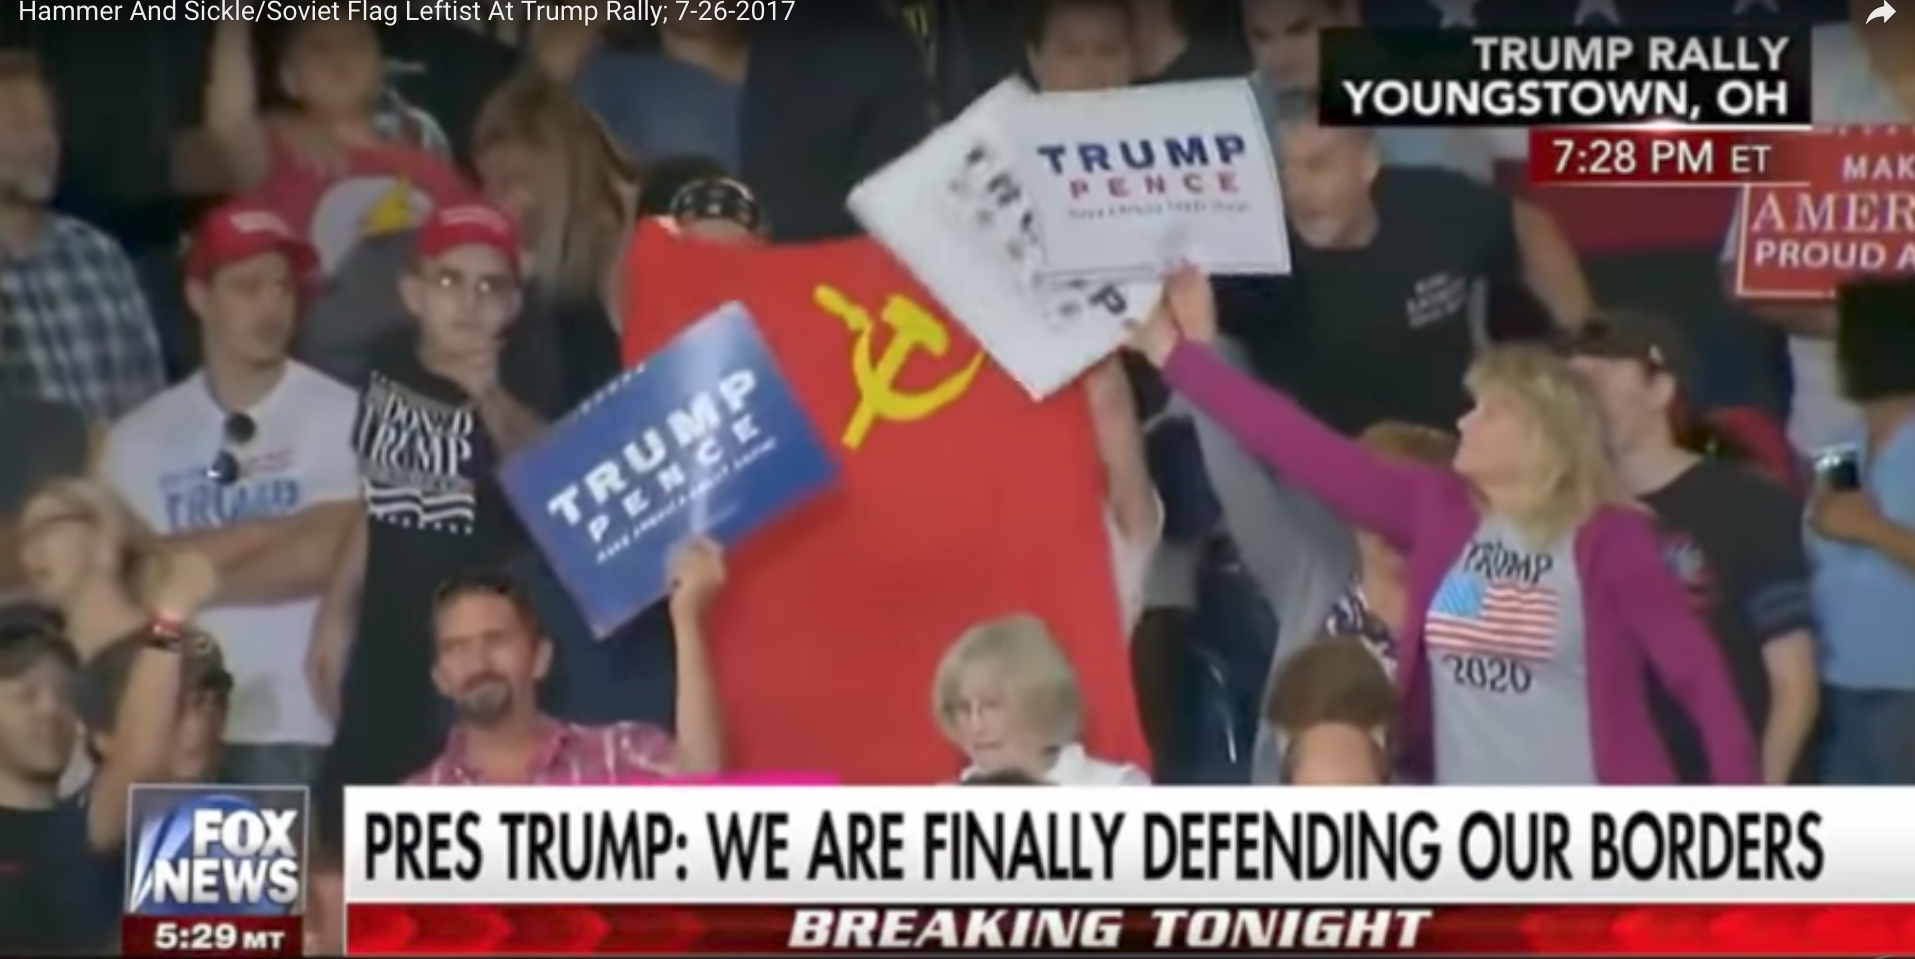 Плакат «Трамп и Пенс должны уйти» и флаг СССР появились на трибуне во время выступления американского лидера в Огайо undefined